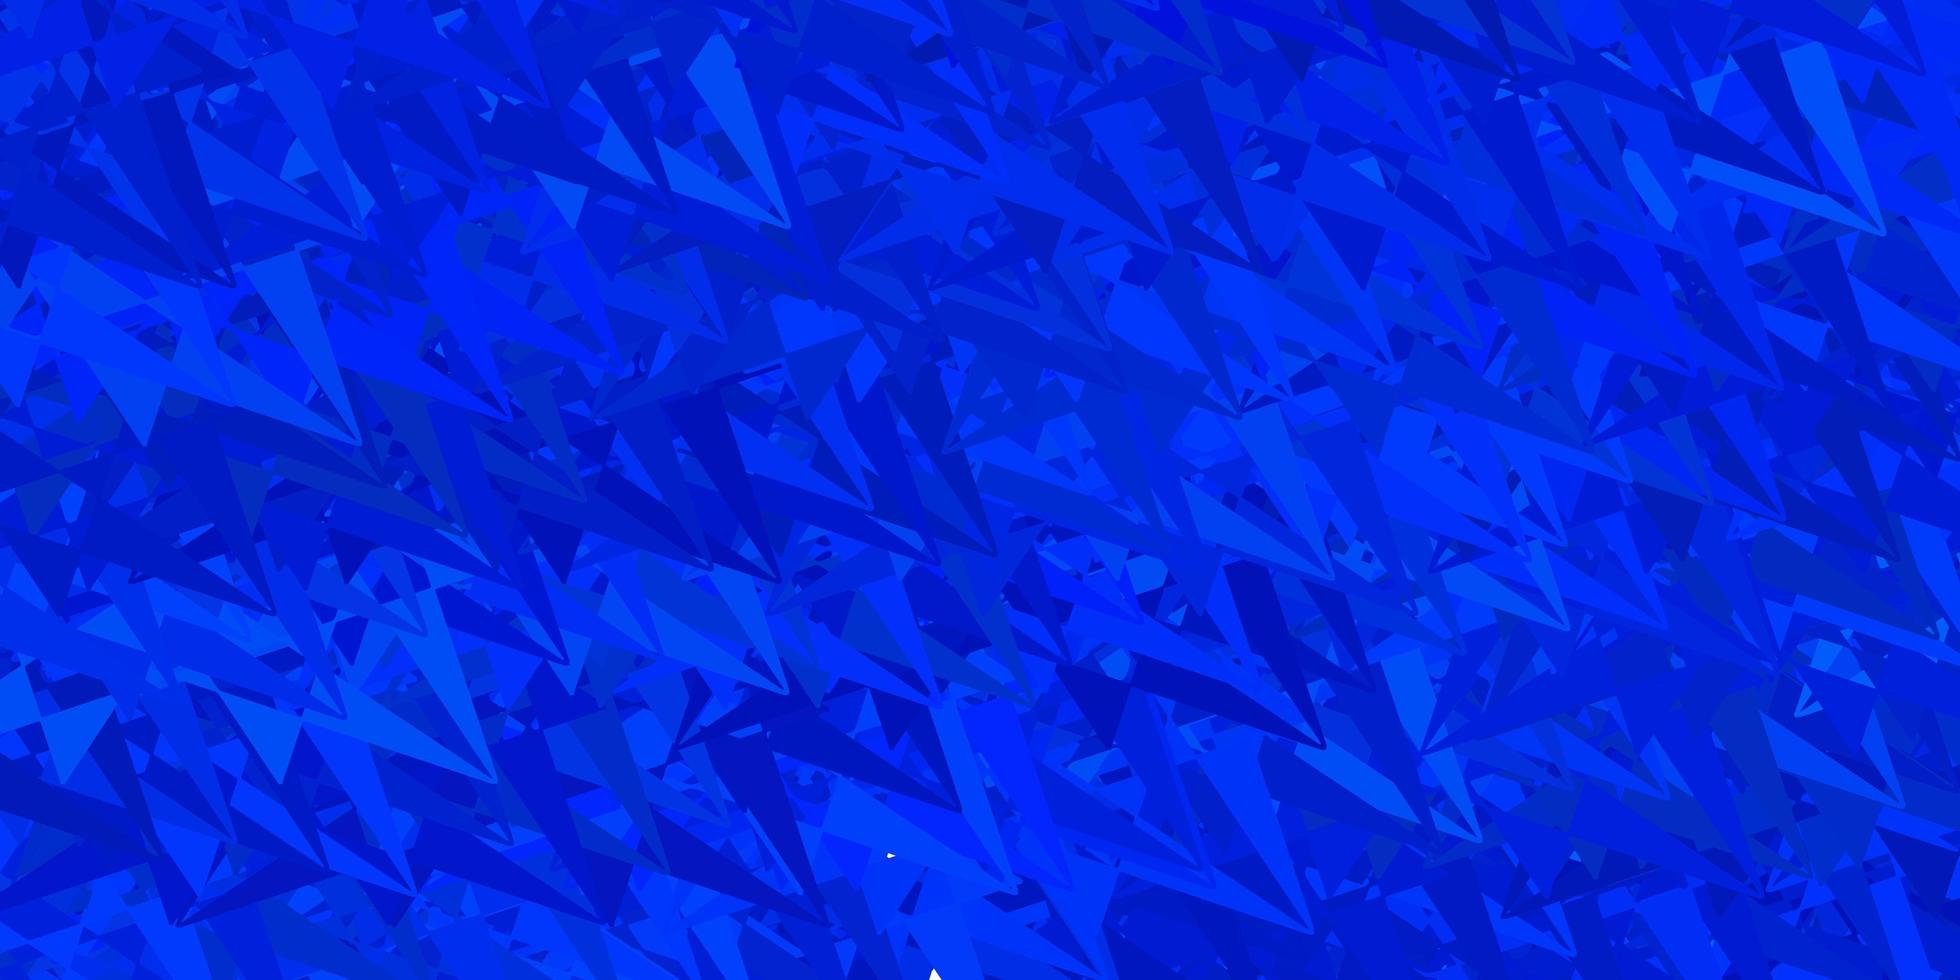 texture de vecteur bleu foncé avec des triangles aléatoires.